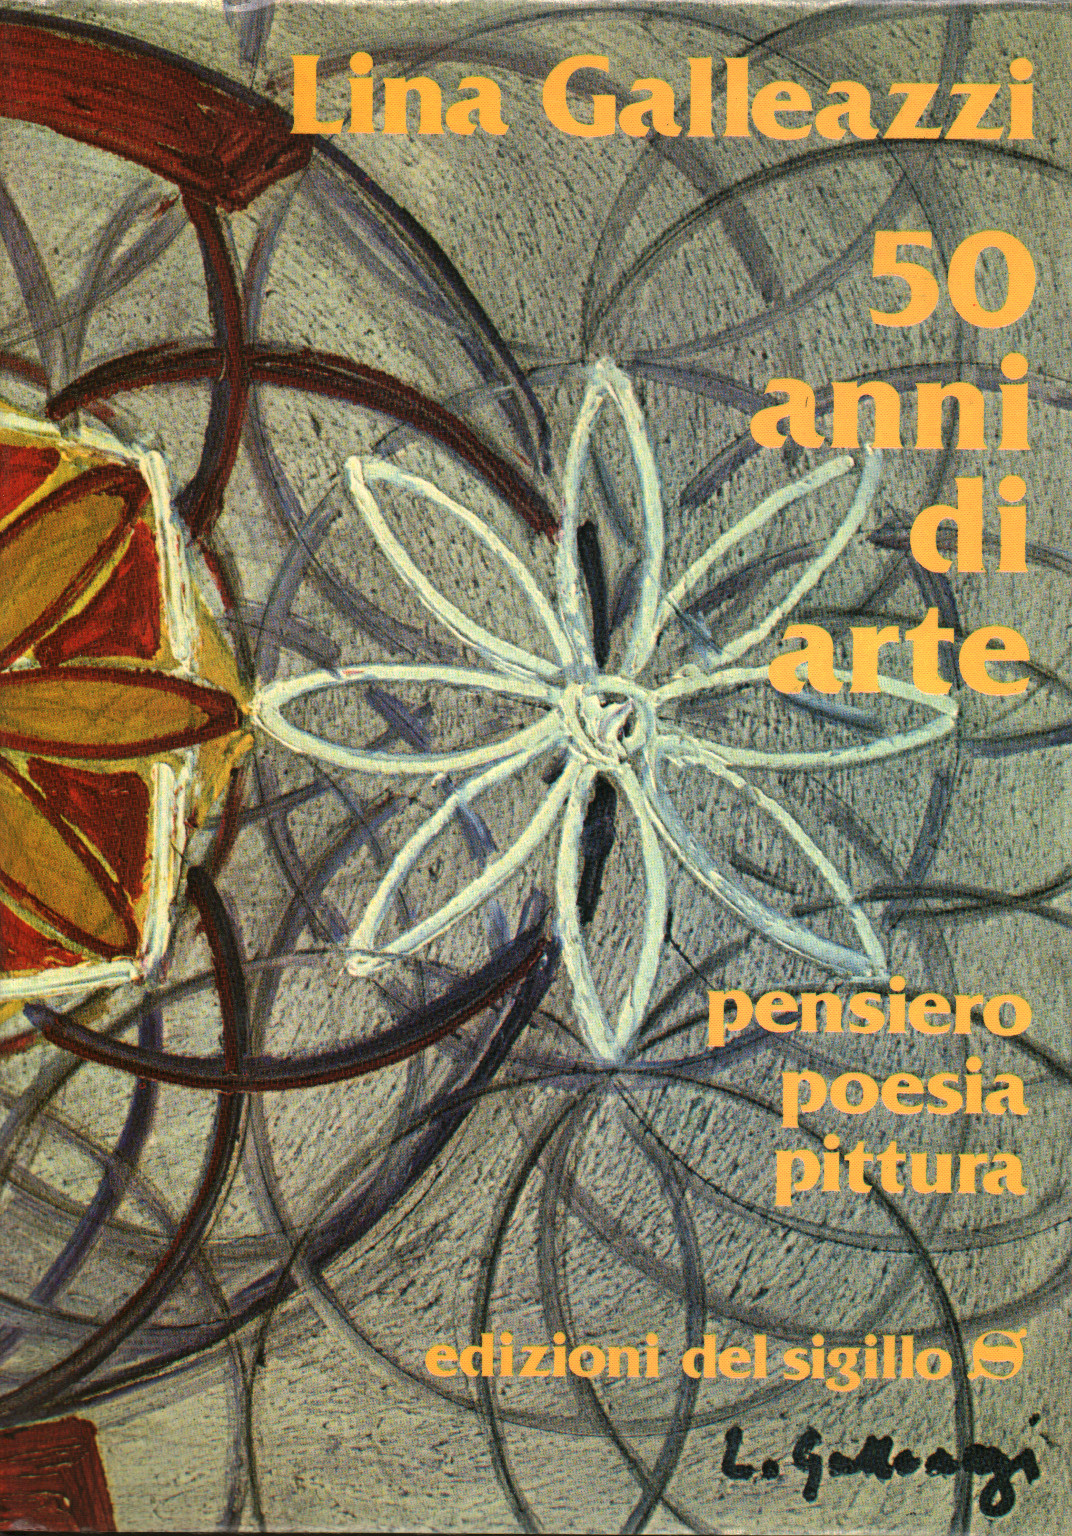 50 Anni di arte, s.a.